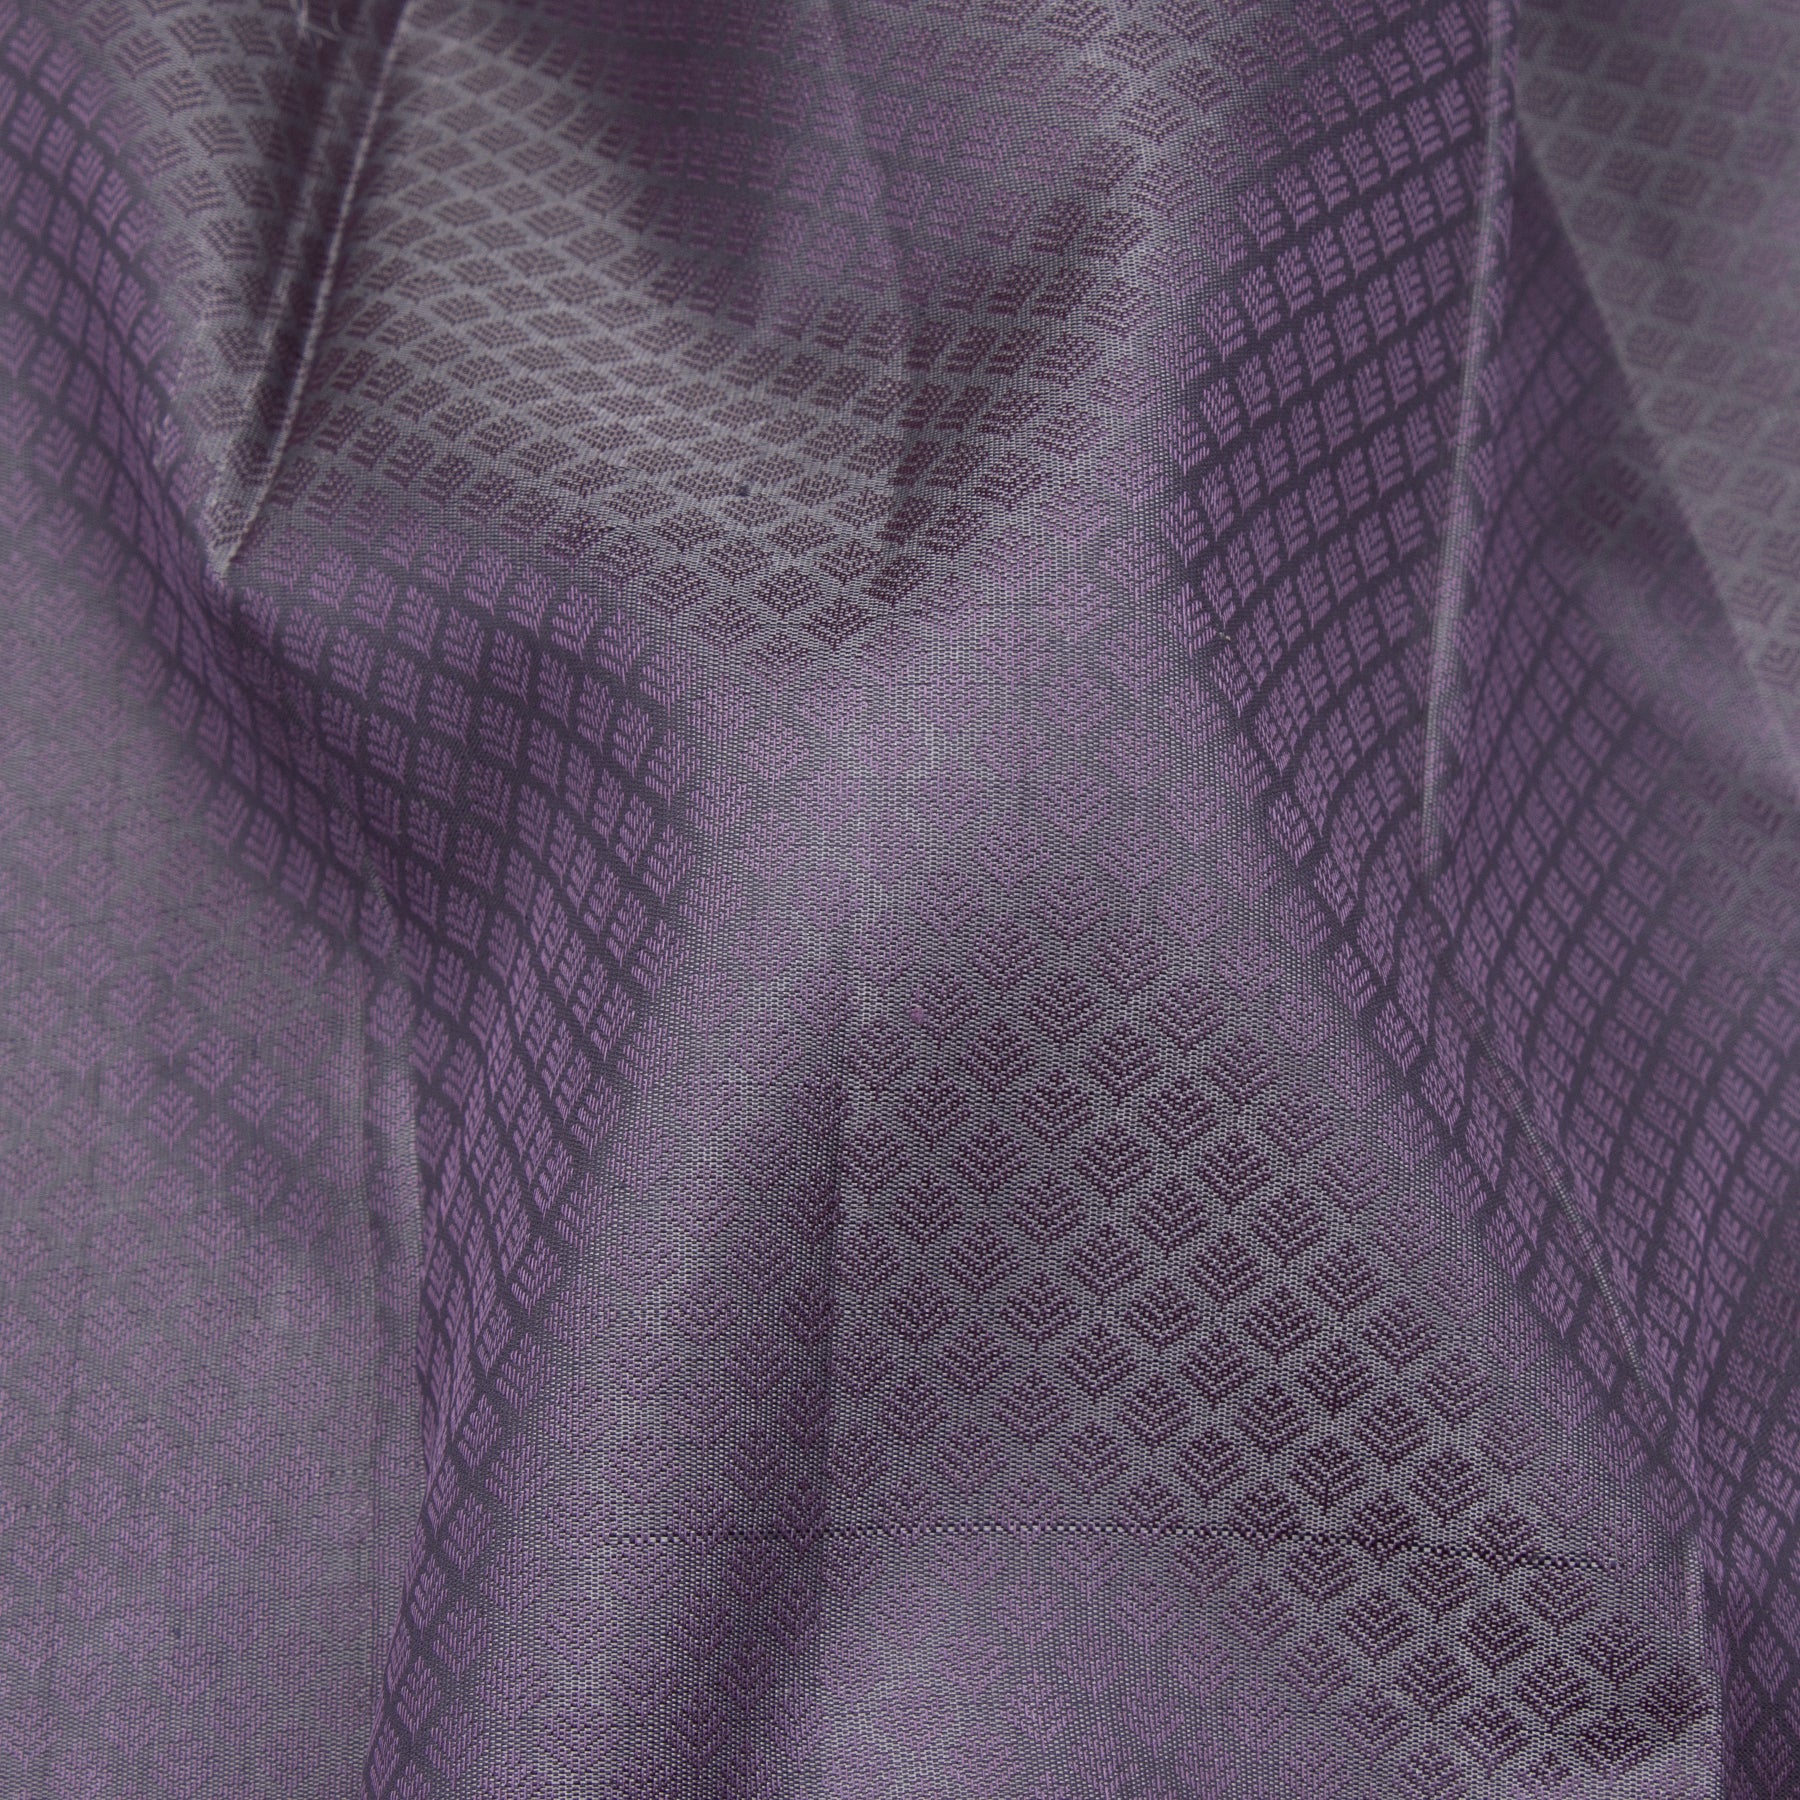 Kanakavalli Kanjivaram Silk Sari 23-599-HS001-13921 - Fabric View